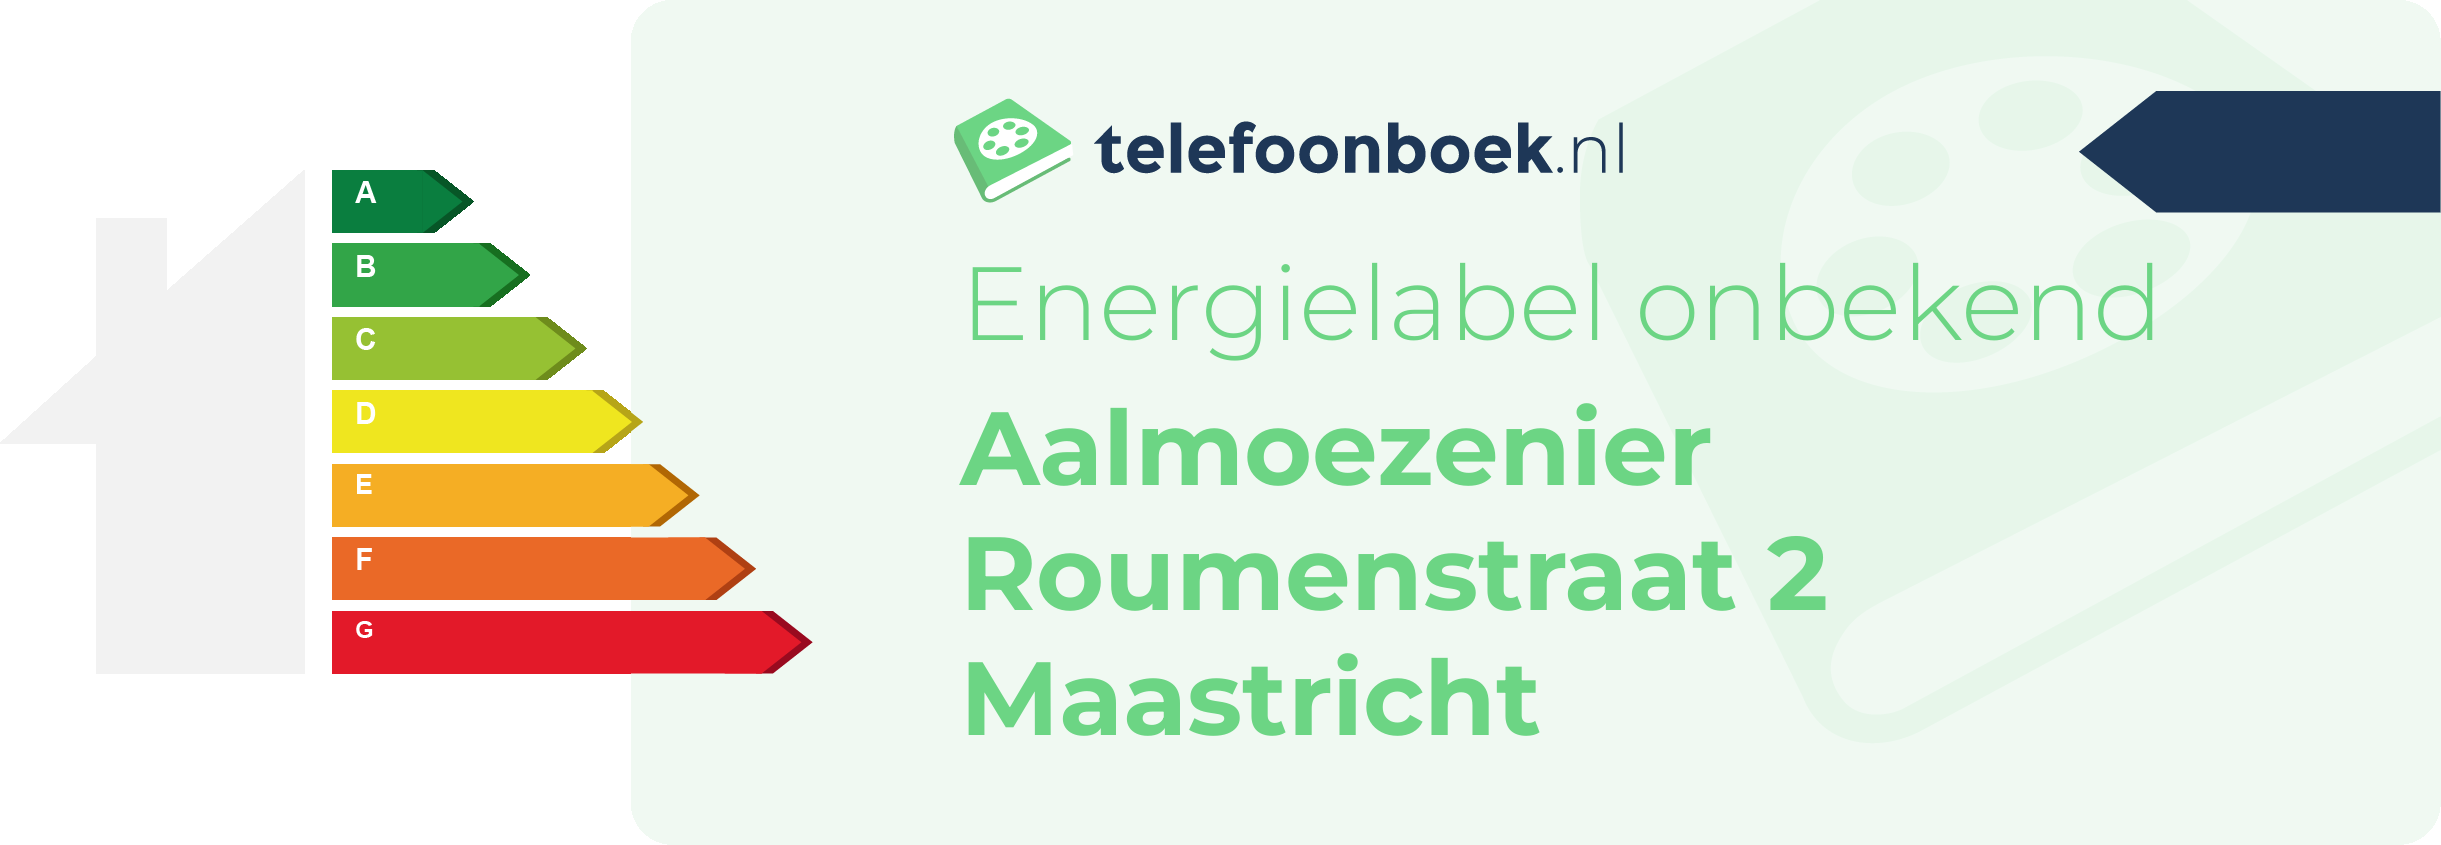 Energielabel Aalmoezenier Roumenstraat 2 Maastricht